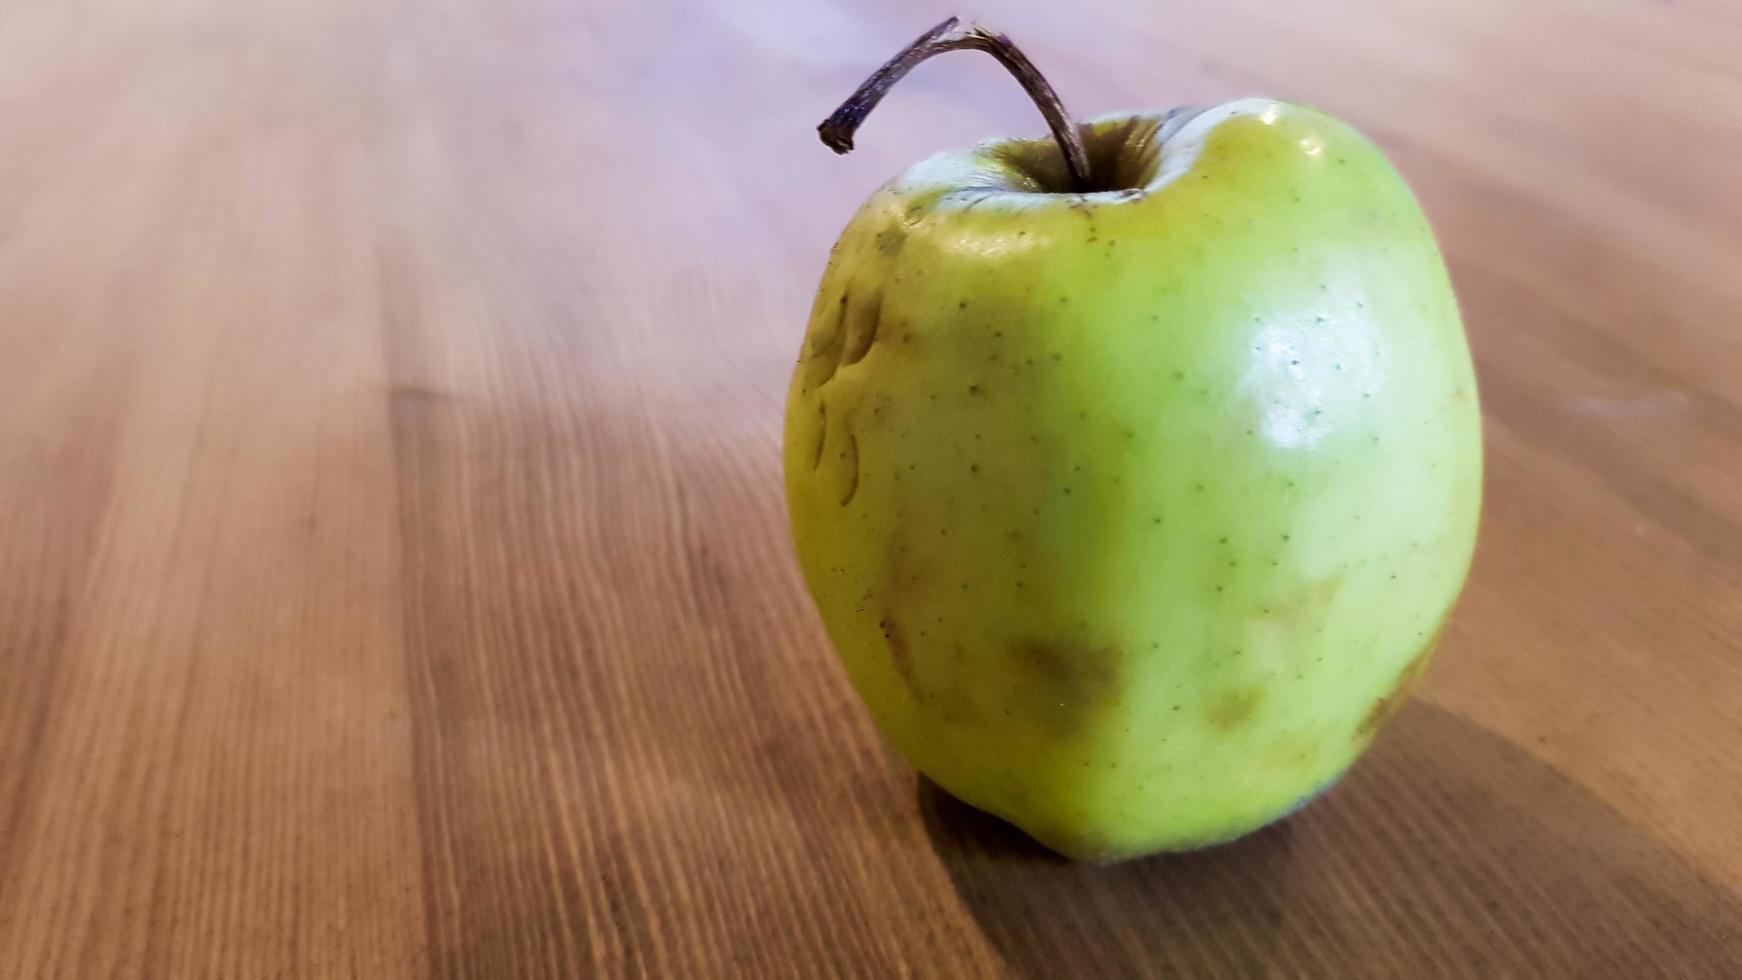 grönt ruttet äpple på en trä bakgrund. grönt äpple på en gammal trä bakgrund, ovanifrån. ekologiskt saftigt bio äpple fult, med defekter ätbara ligger på ett träbord. ingen ful mat foto